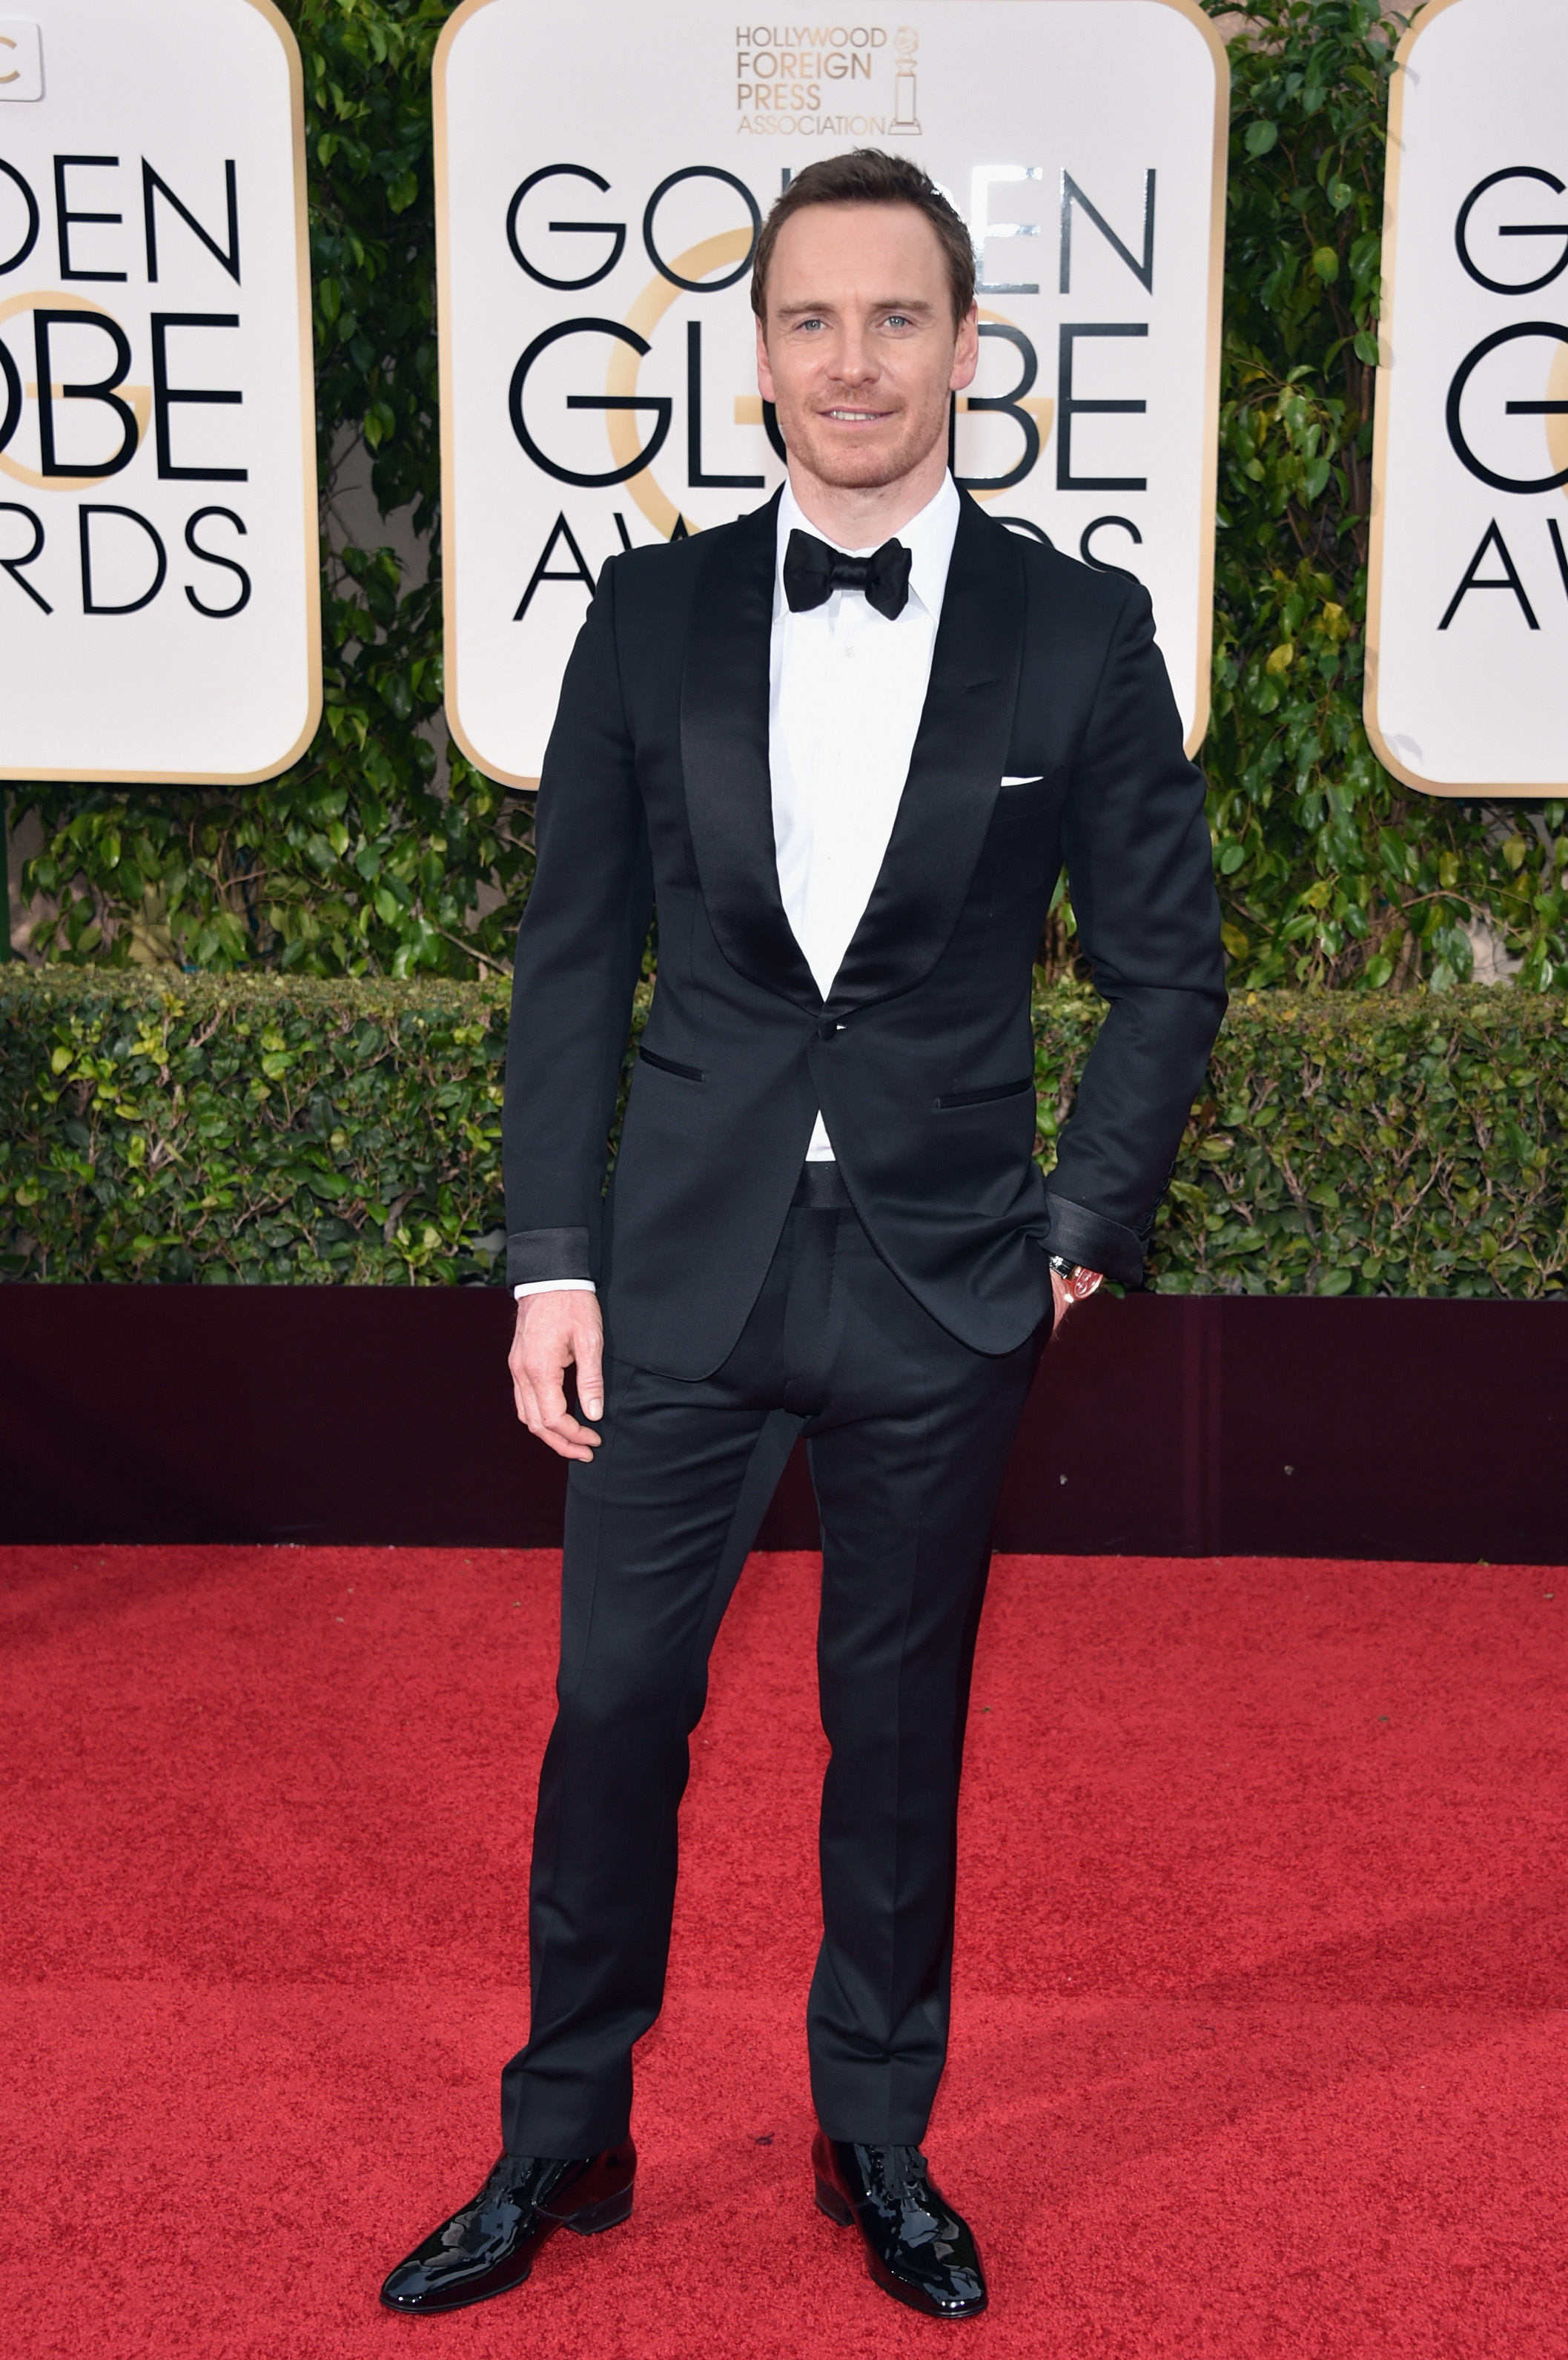 attends the 73rd Annual Golden Globe Awards held at the Beverly Hilton Hotel on January 10, 2016 in Beverly Hills, California. (John Shearer&mdash;2016 John Shearer)